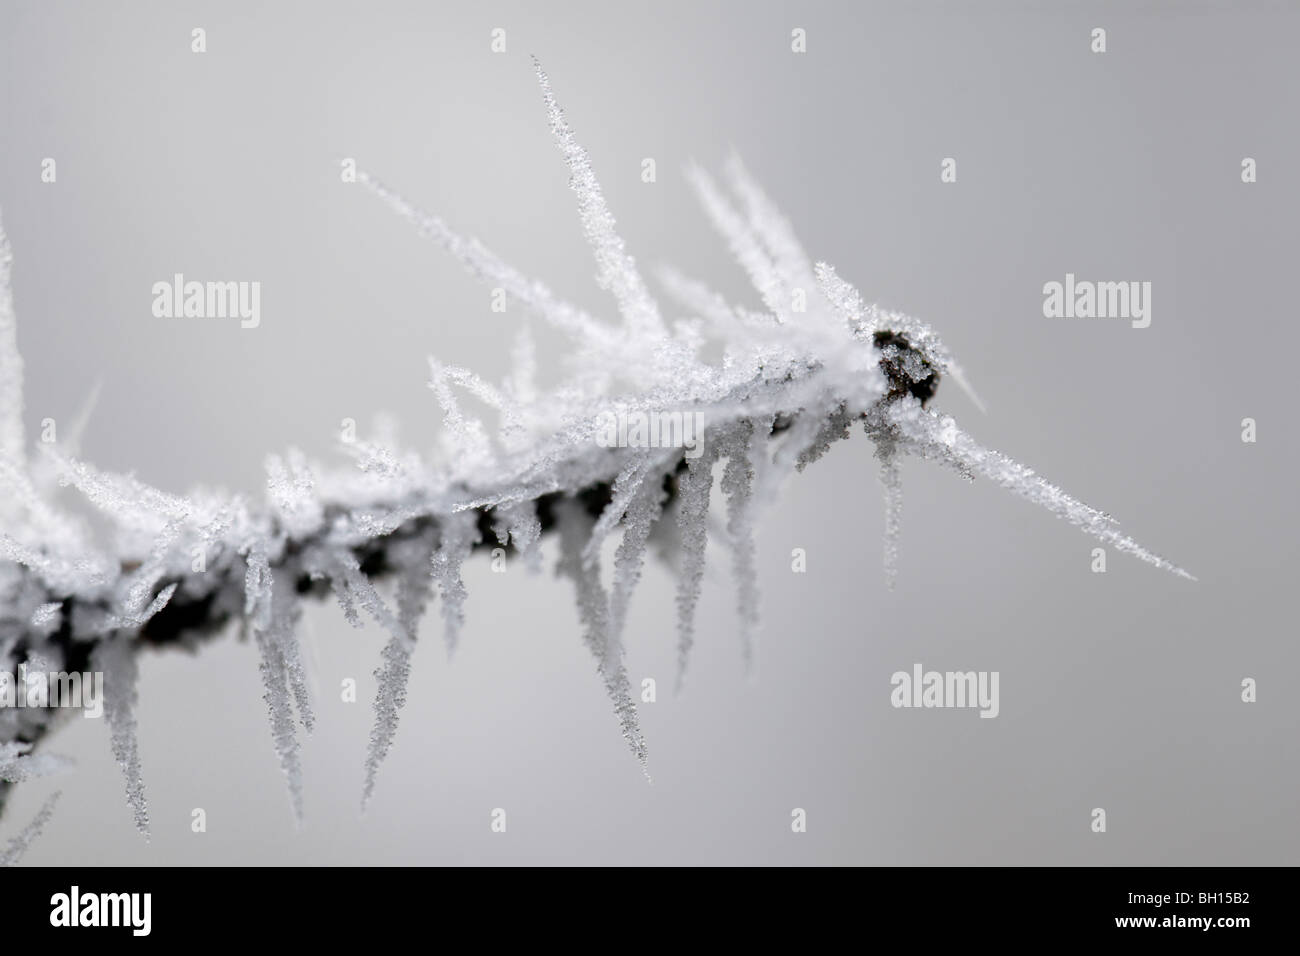 Winterliche Szene ziemlich stachelig Raureif auf einer gefrorenen Zweigwerk Eiskristalle zeigt hautnah Stockfoto